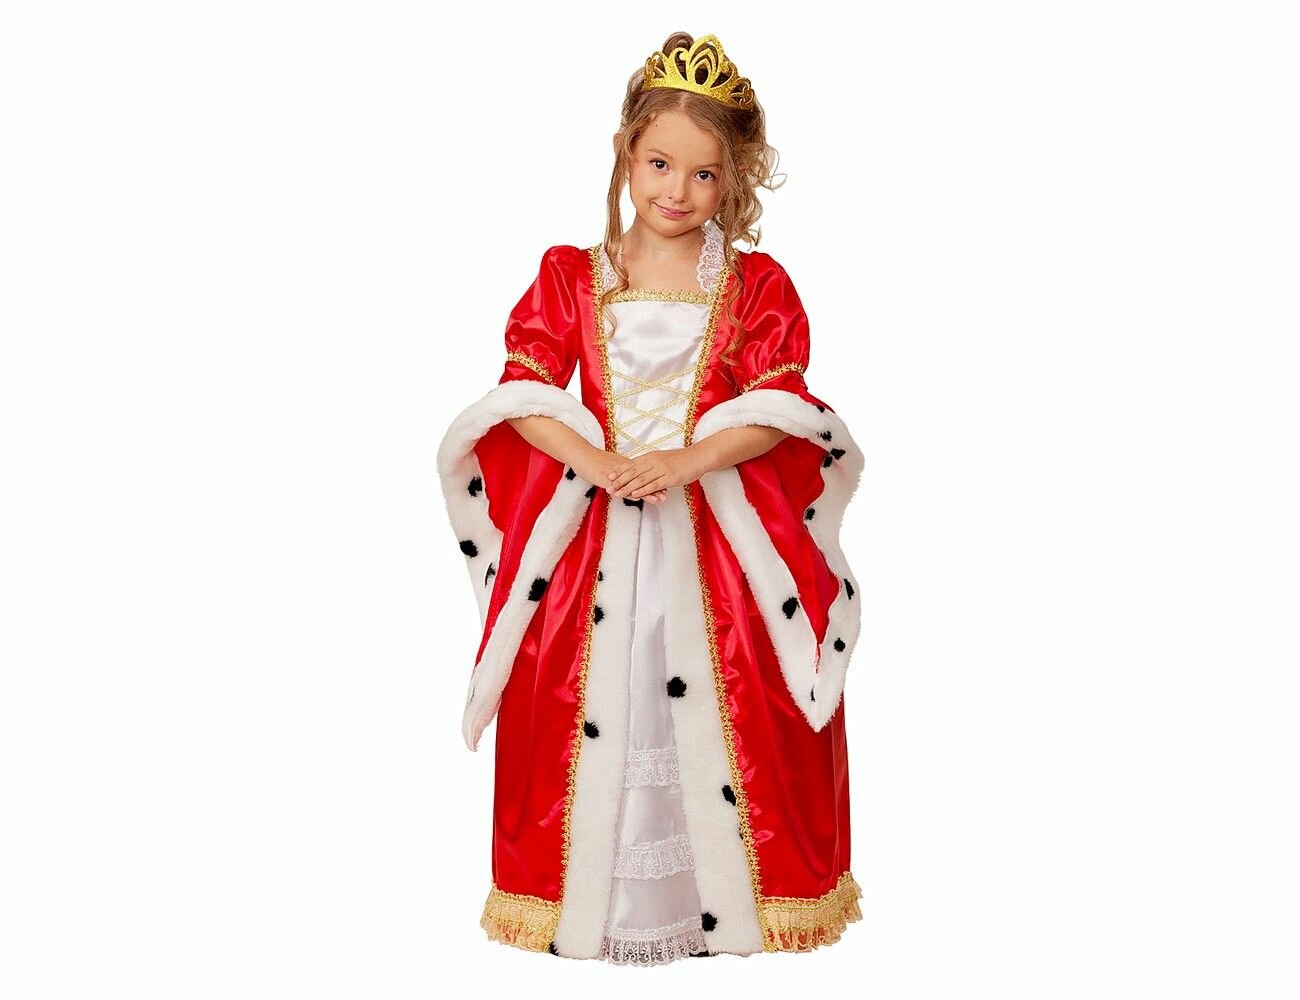 Карнавальный костюм детский Королева р.134-68 22-62 для девочки на утренник на хэллоуин на новый год костюм королевы костюм королевы для девочки